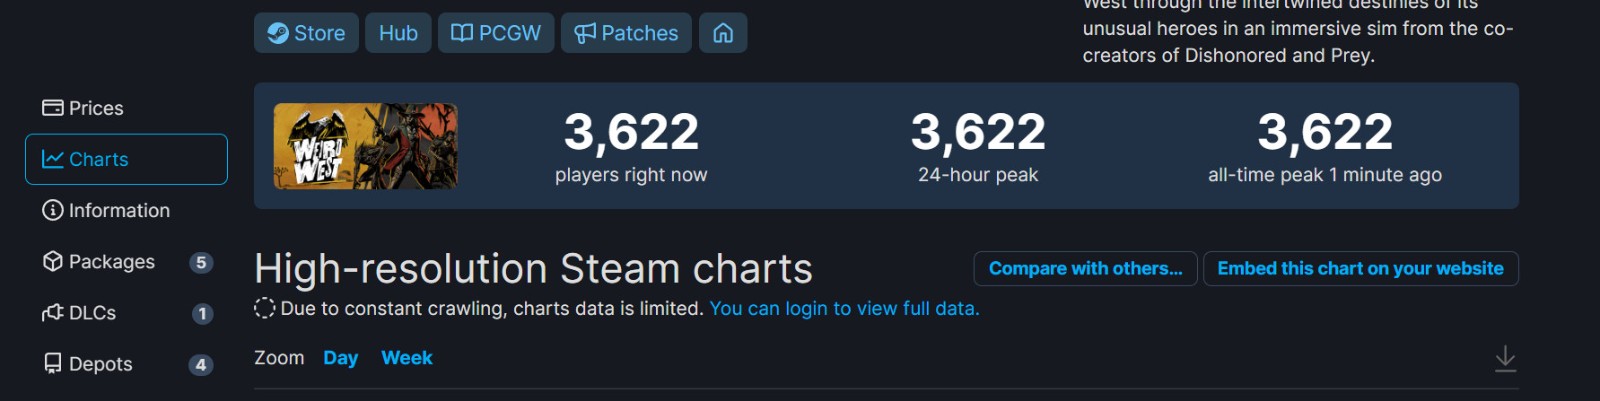 《诡同西部》Steam出格好评 正在线峰值3622人